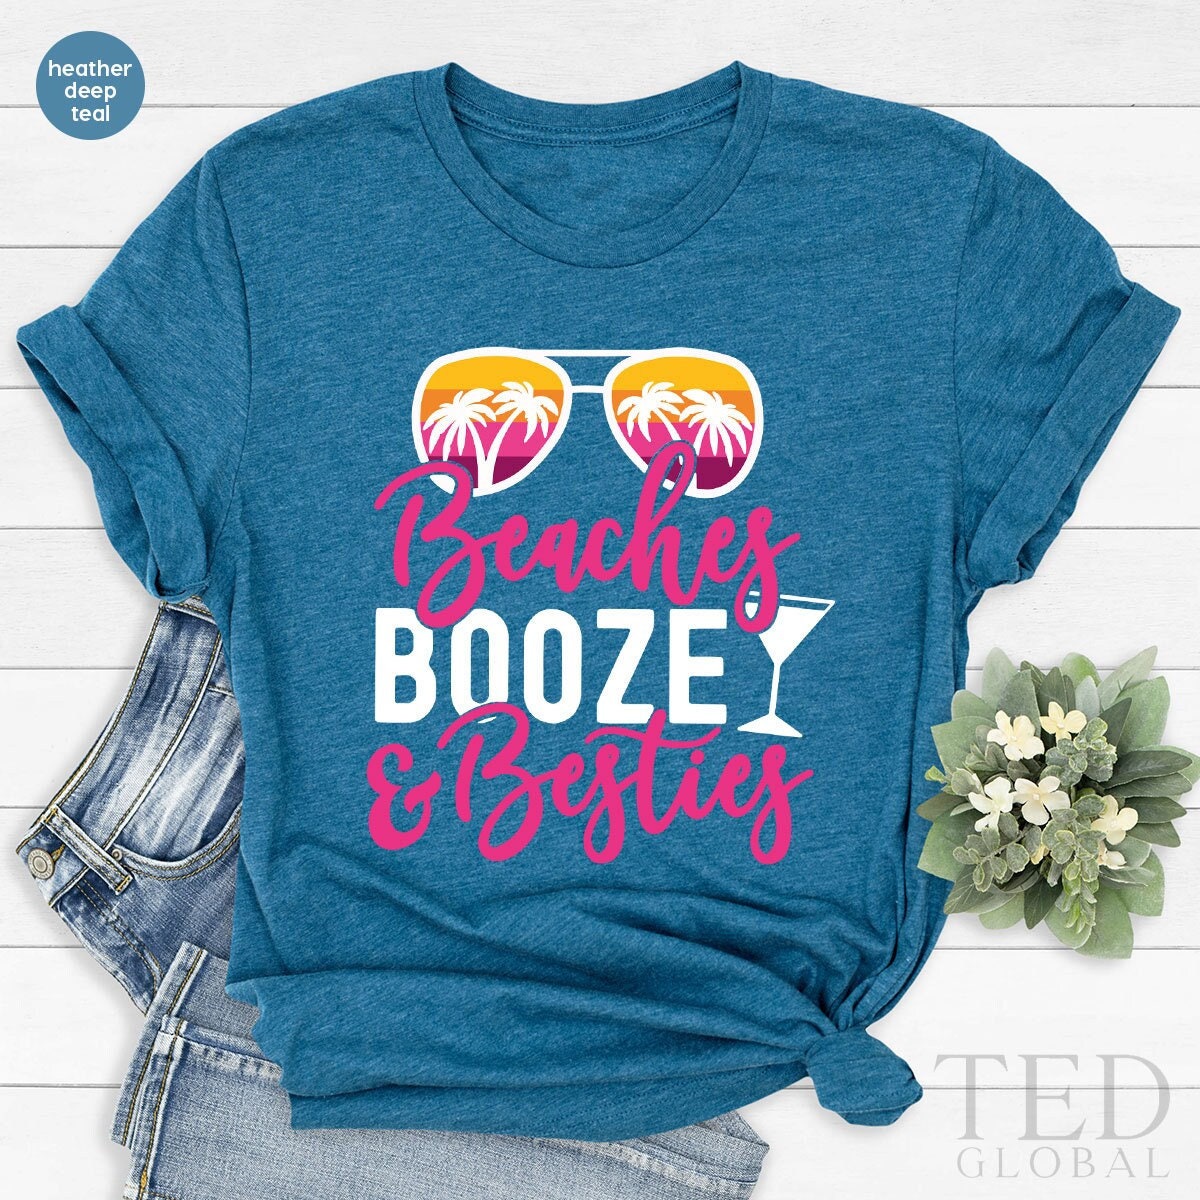 Funny Beach Shirt, Summer Vacation T-Shirt, Cute Trip T Shirt, Best Friend Shirts, Tropical Tee, Booze Besties T-Shirt, Gift For Friends - Fastdeliverytees.com